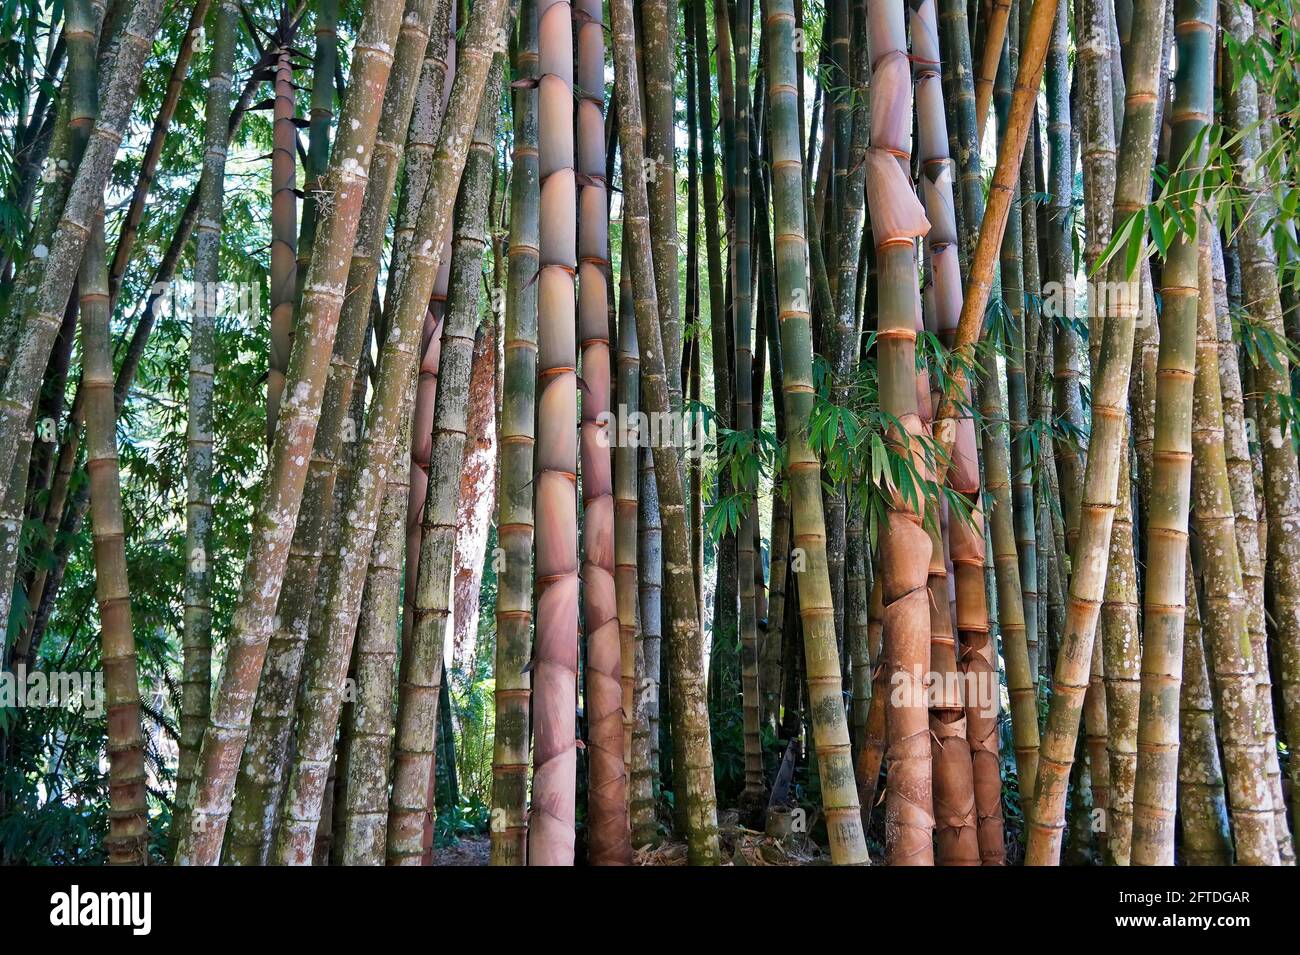 Giant bamboo or dragon bamboo (Dendrocalamus giganteus), Rio de Janeiro, Brazil Stock Photo